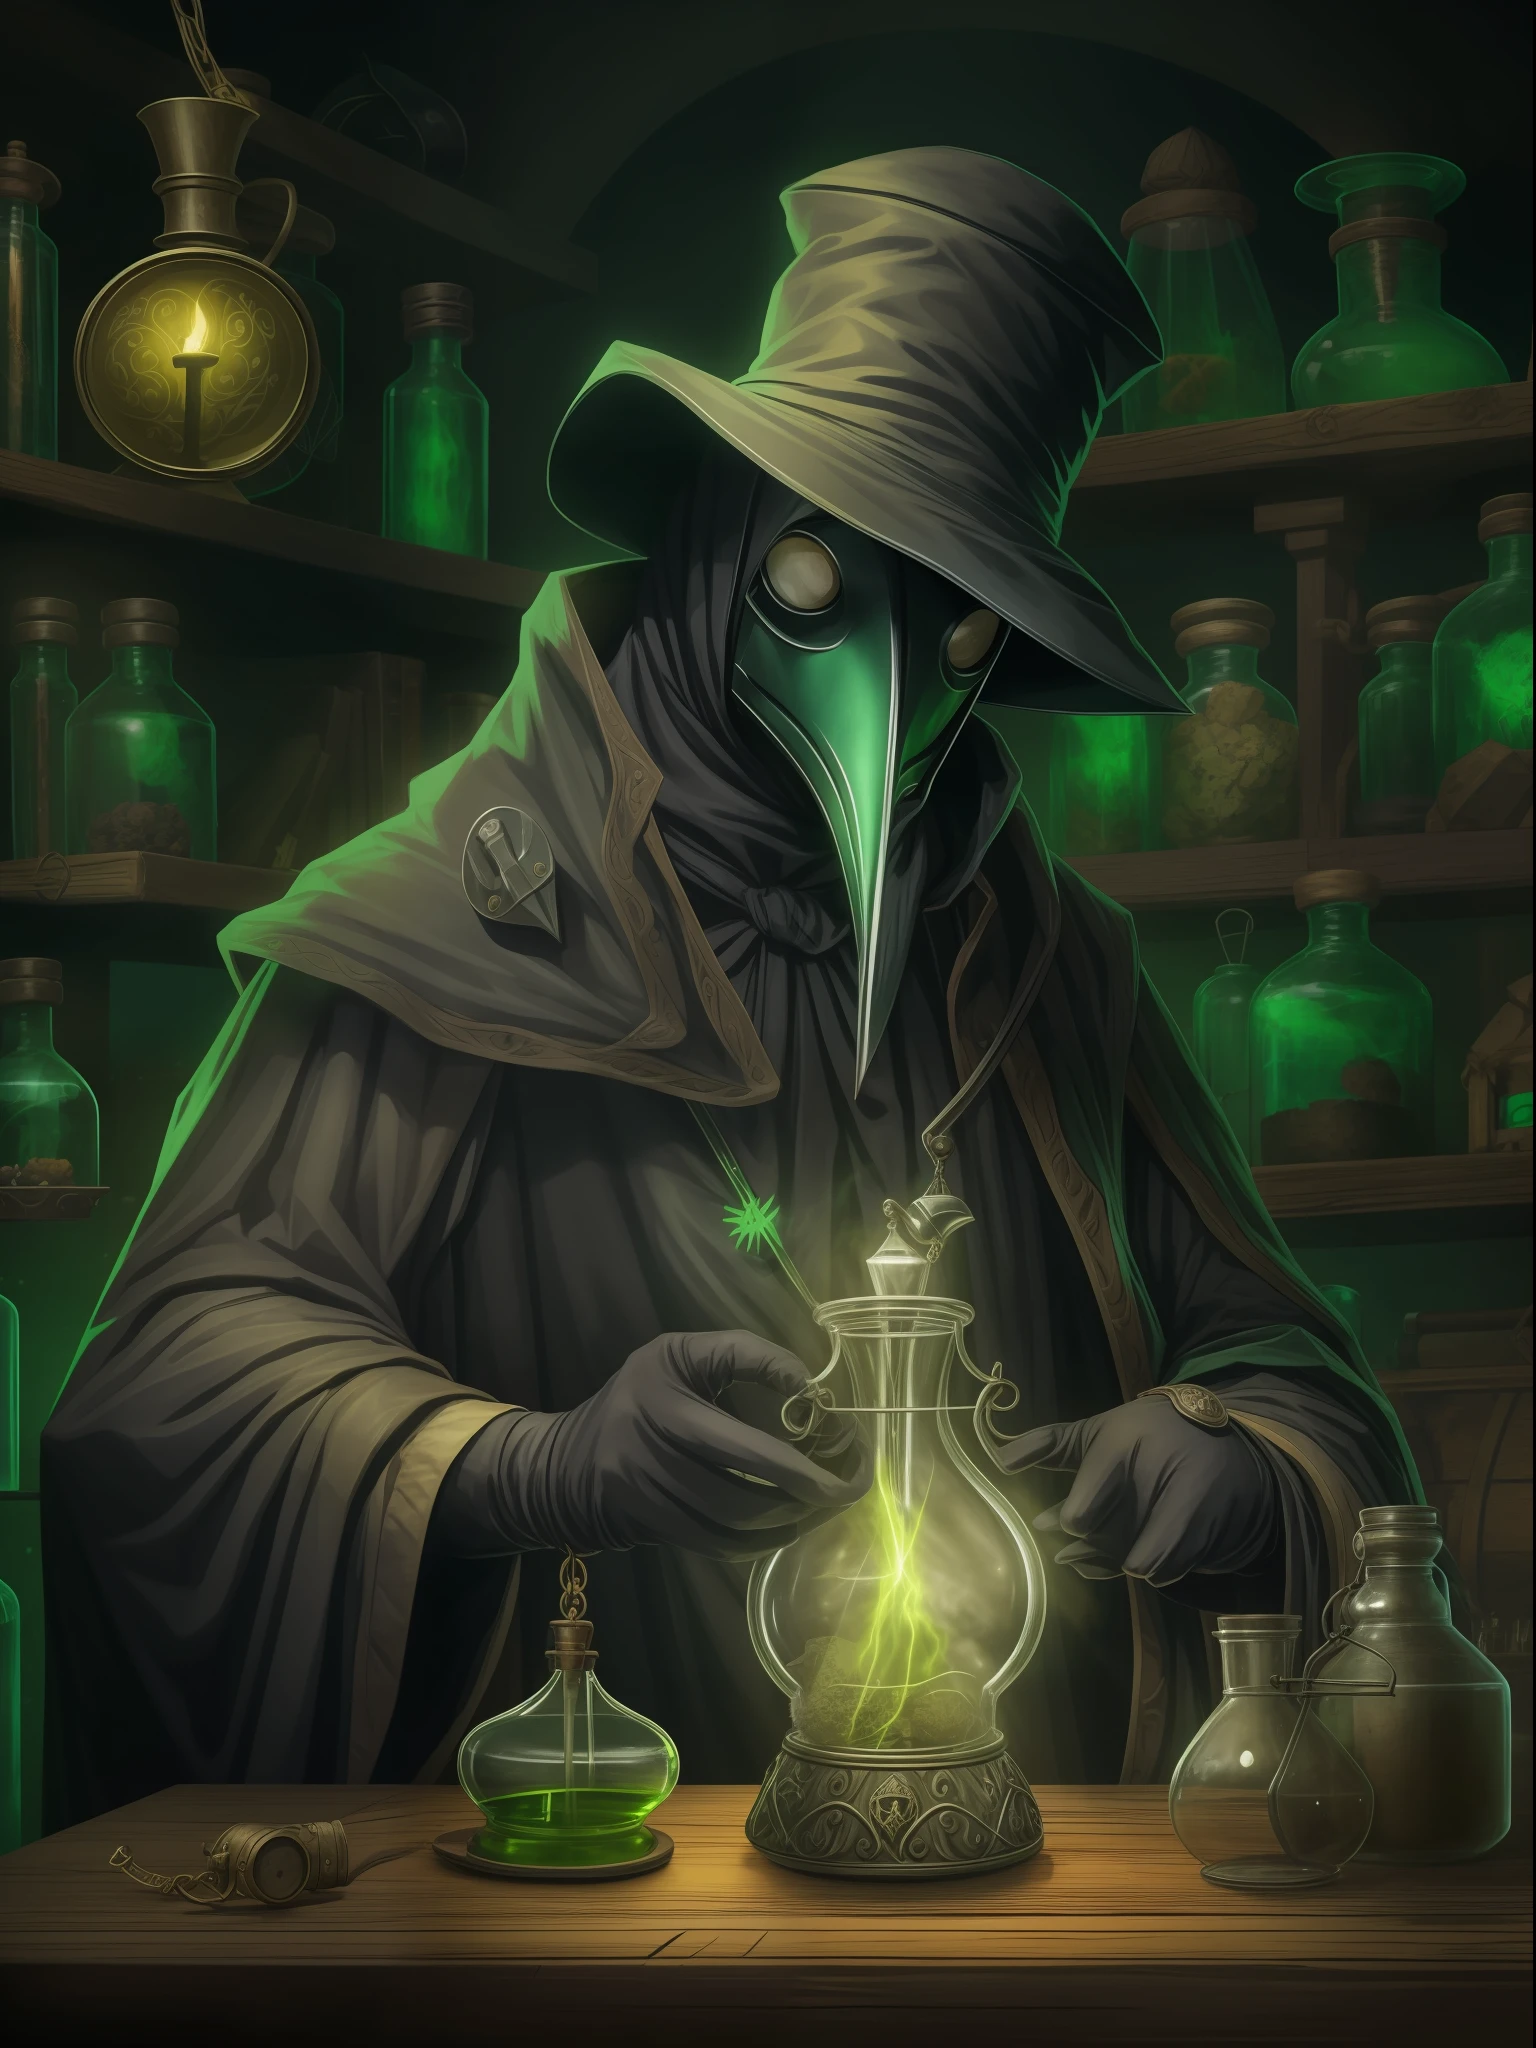 "Um médico da peste com uma máscara escura e um traje antigo, Segurando uma poção misteriosa em suas mãos enluvadas, em um laboratório escuro e enigmático. Ao fundo, um aura sinistra de cor verde fulgurante e venenosa, emanando raios de luz. Ao seu lado, Um pequeno rato de estimação verde, observando curiosamente."